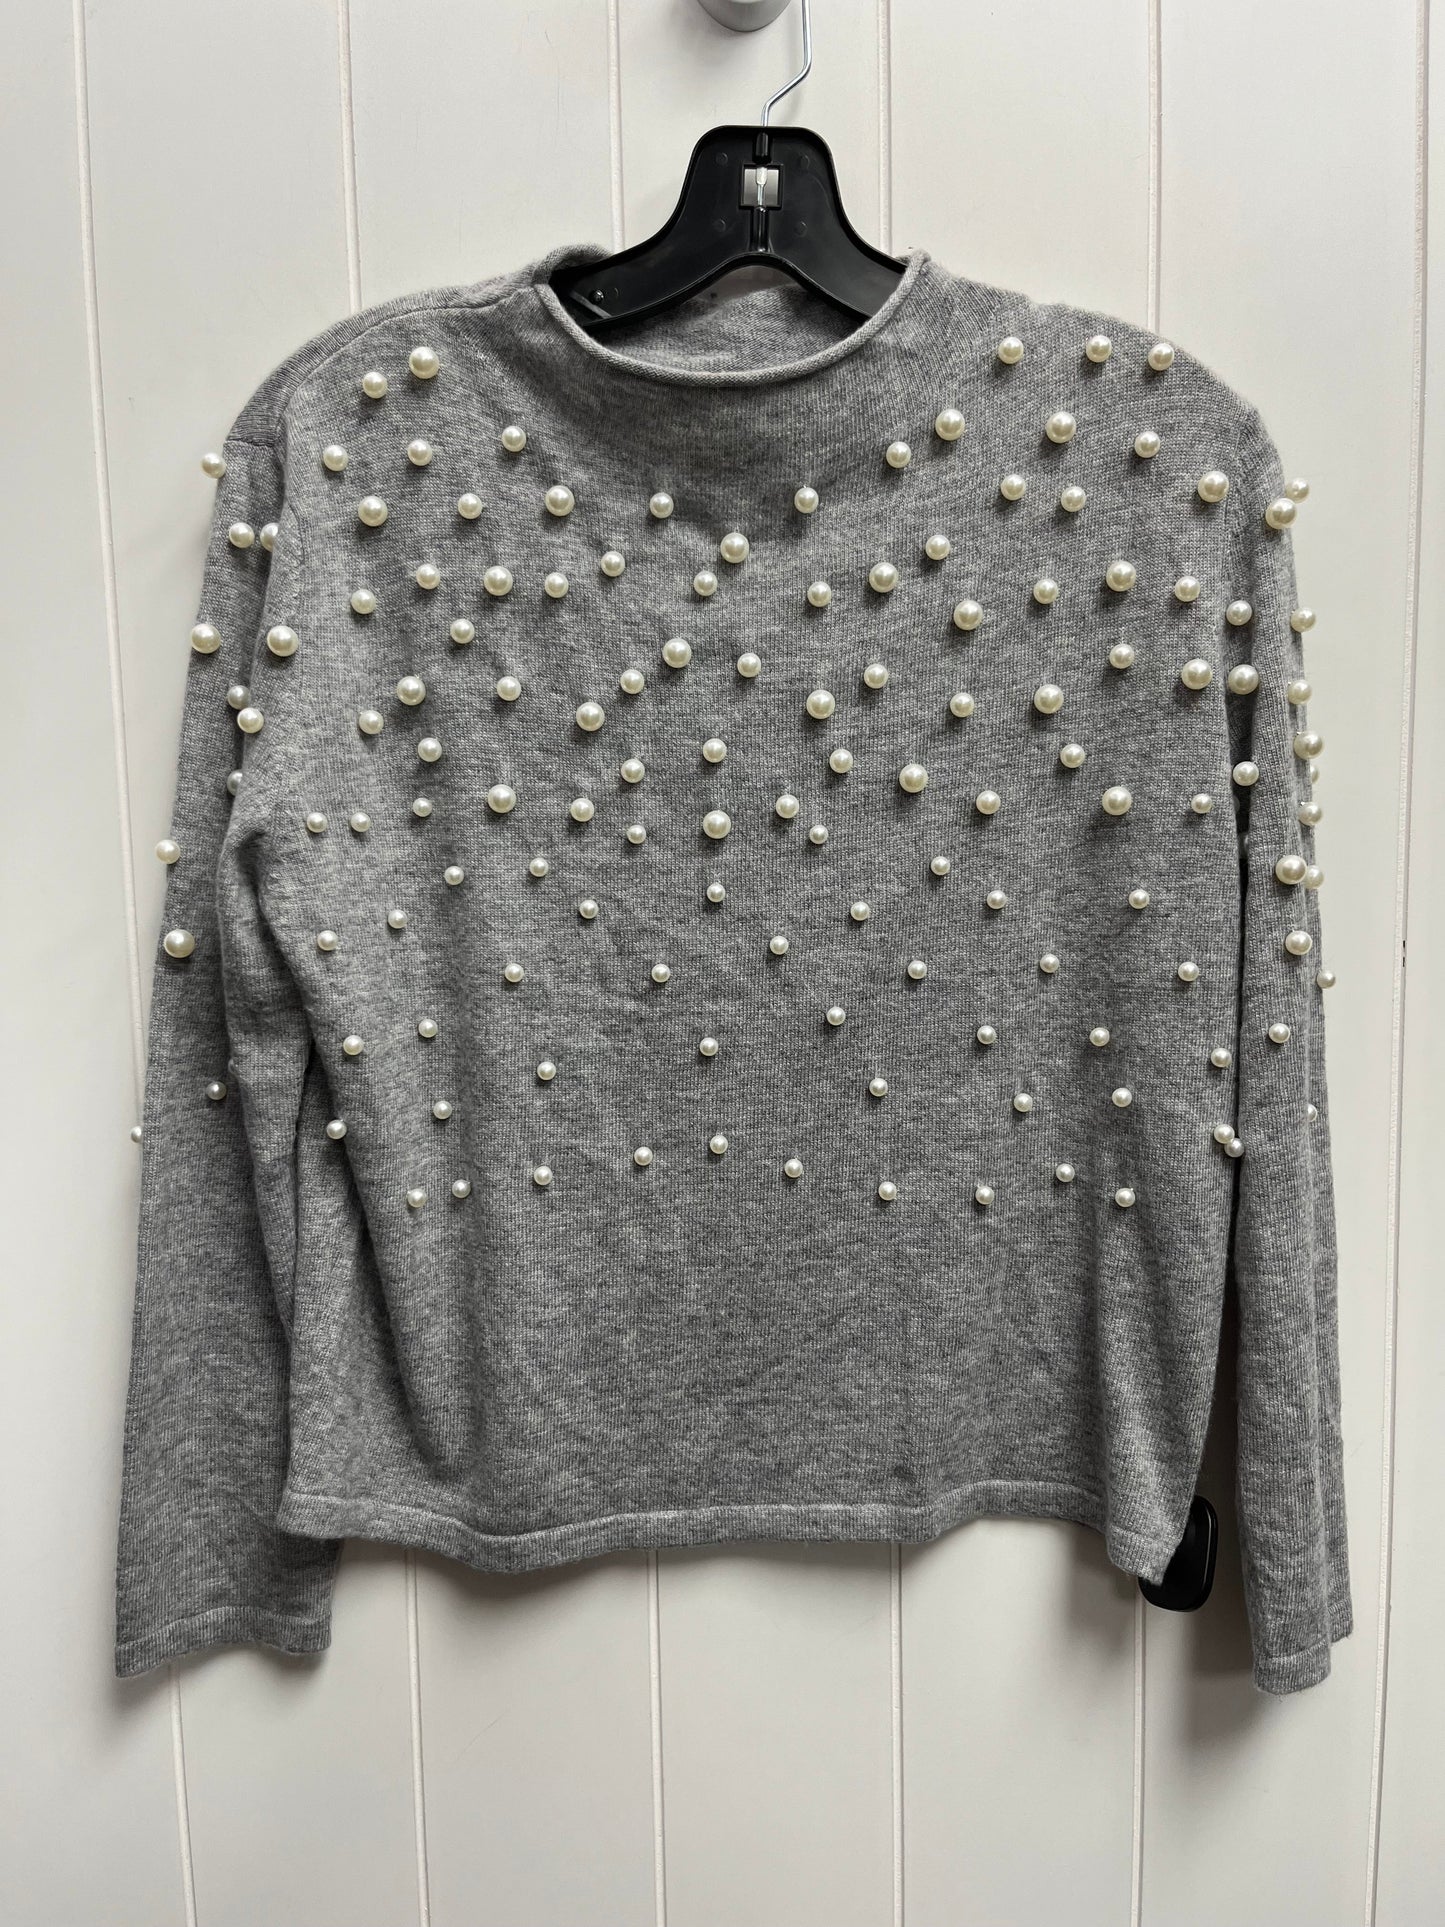 Sweater By Gianni Bini  Size: S